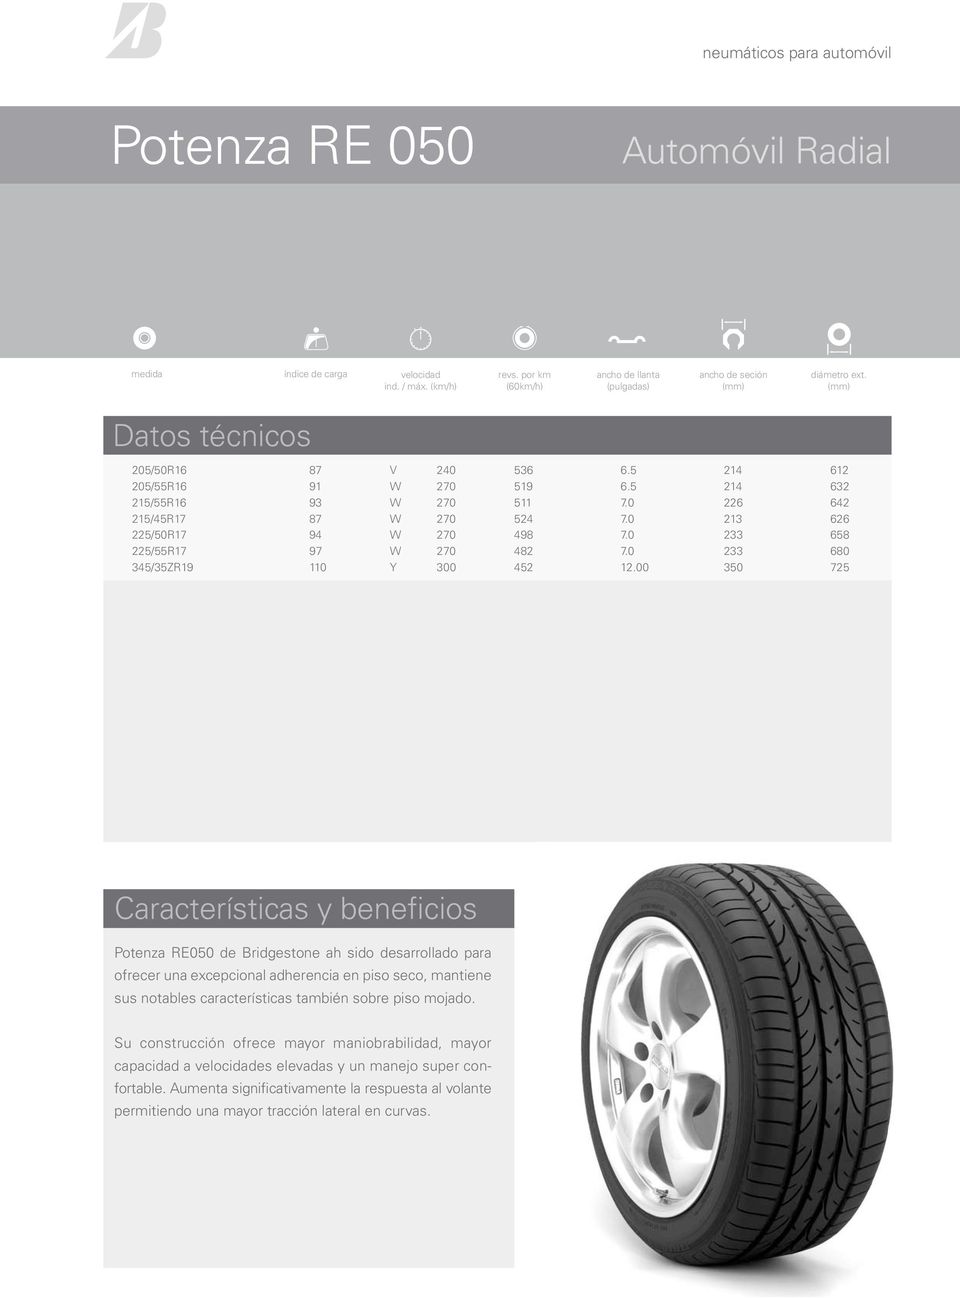 00 350 725 Potenza RE050 de Bridgestone ah sido desarrollado para ofrecer una excepcional adherencia en piso seco, mantiene sus notables características también sobre piso mojado.